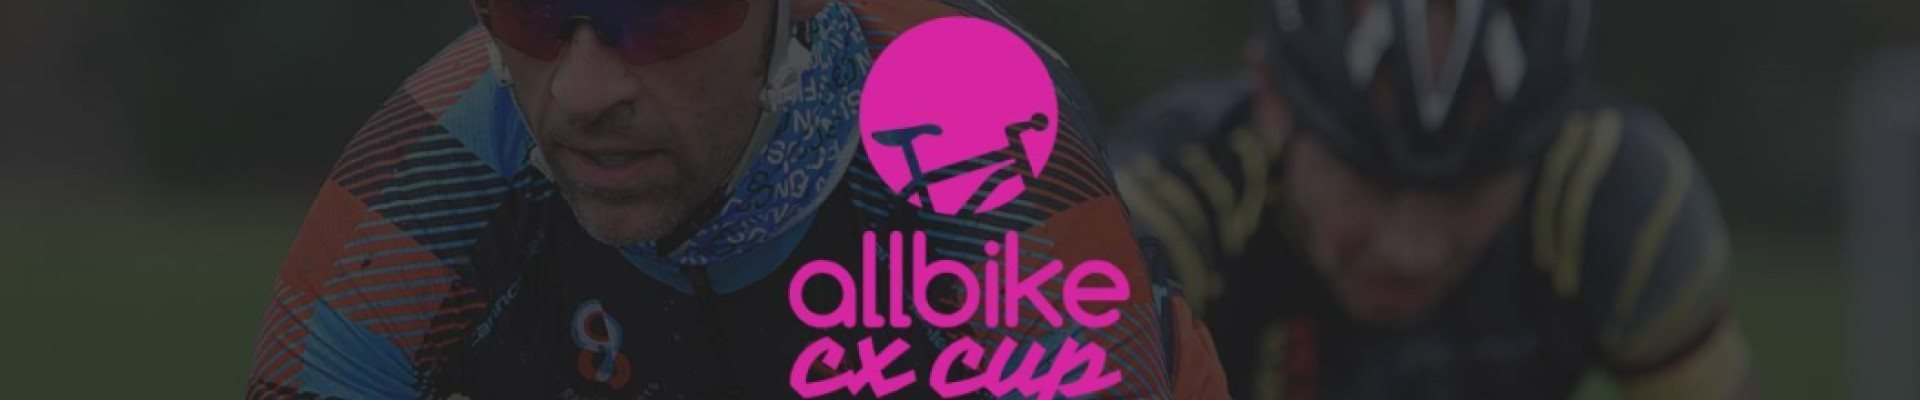 Allbike CX cup 20/21 #1 Randers